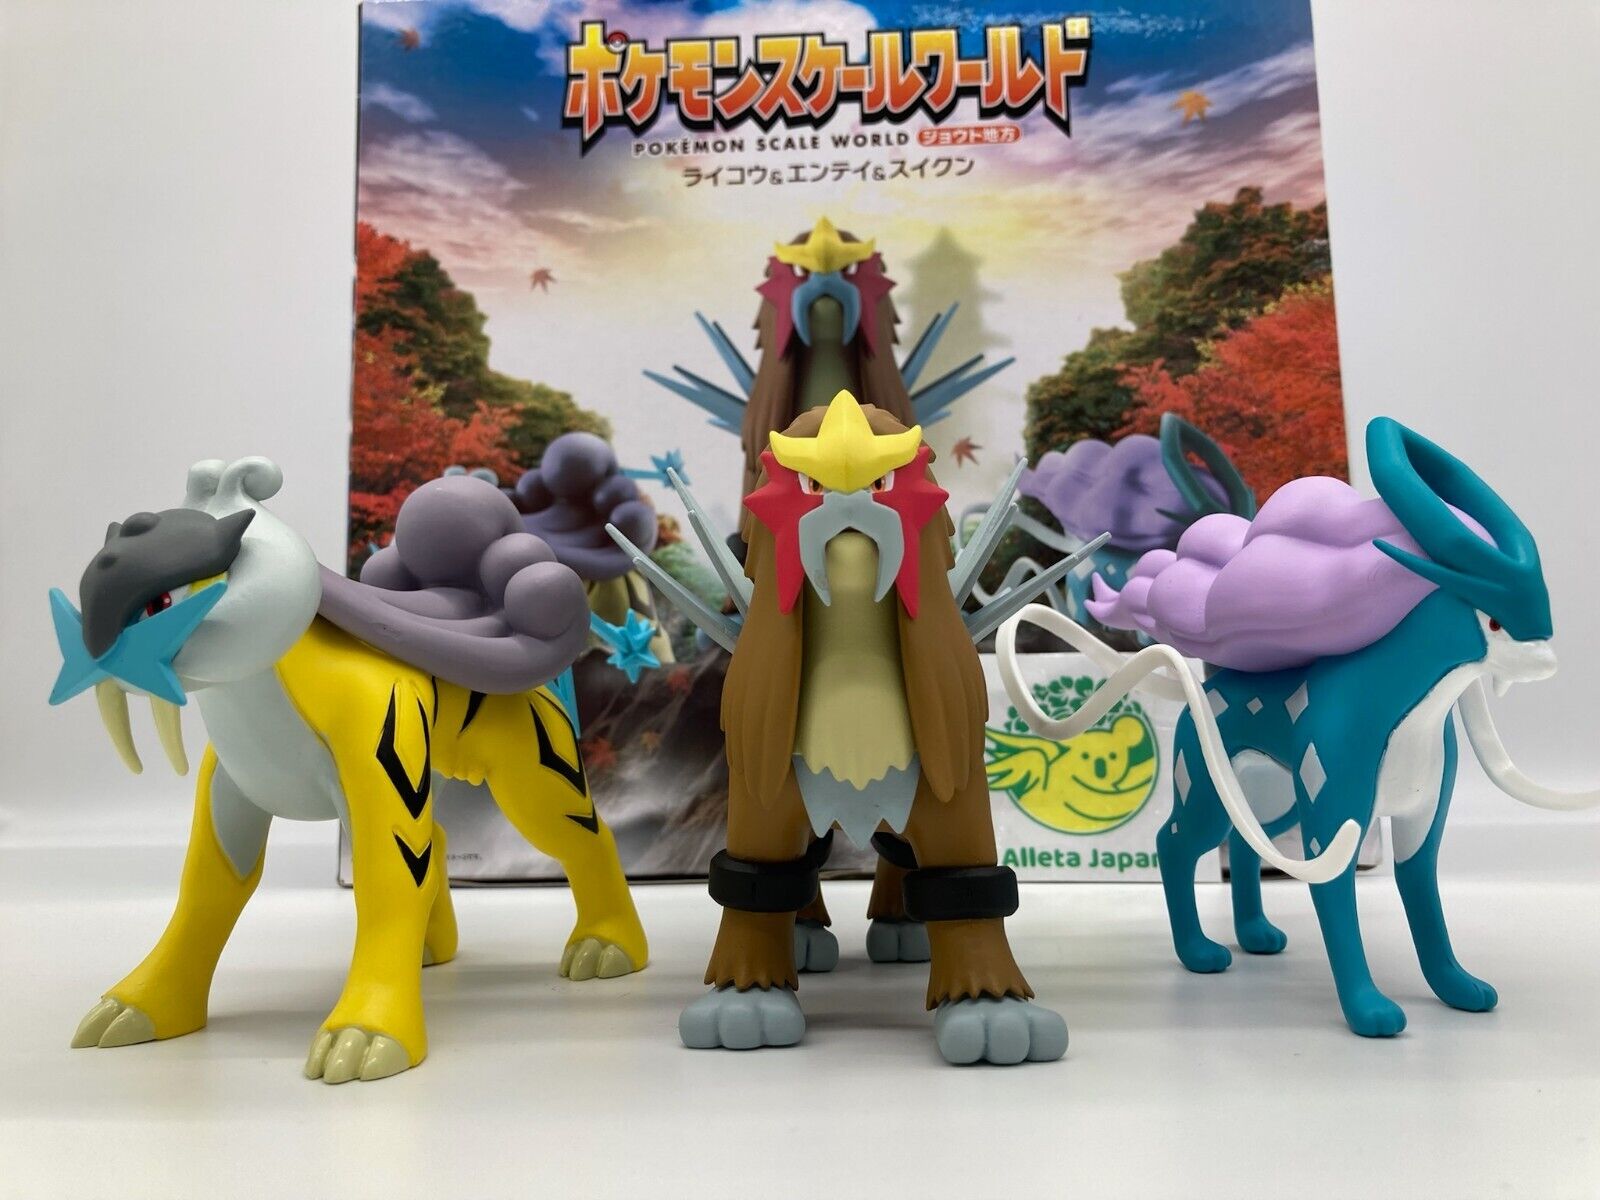 Pokemon Scale World Johto Region Raikou Entei Suicune limited Toy Anime Figure  